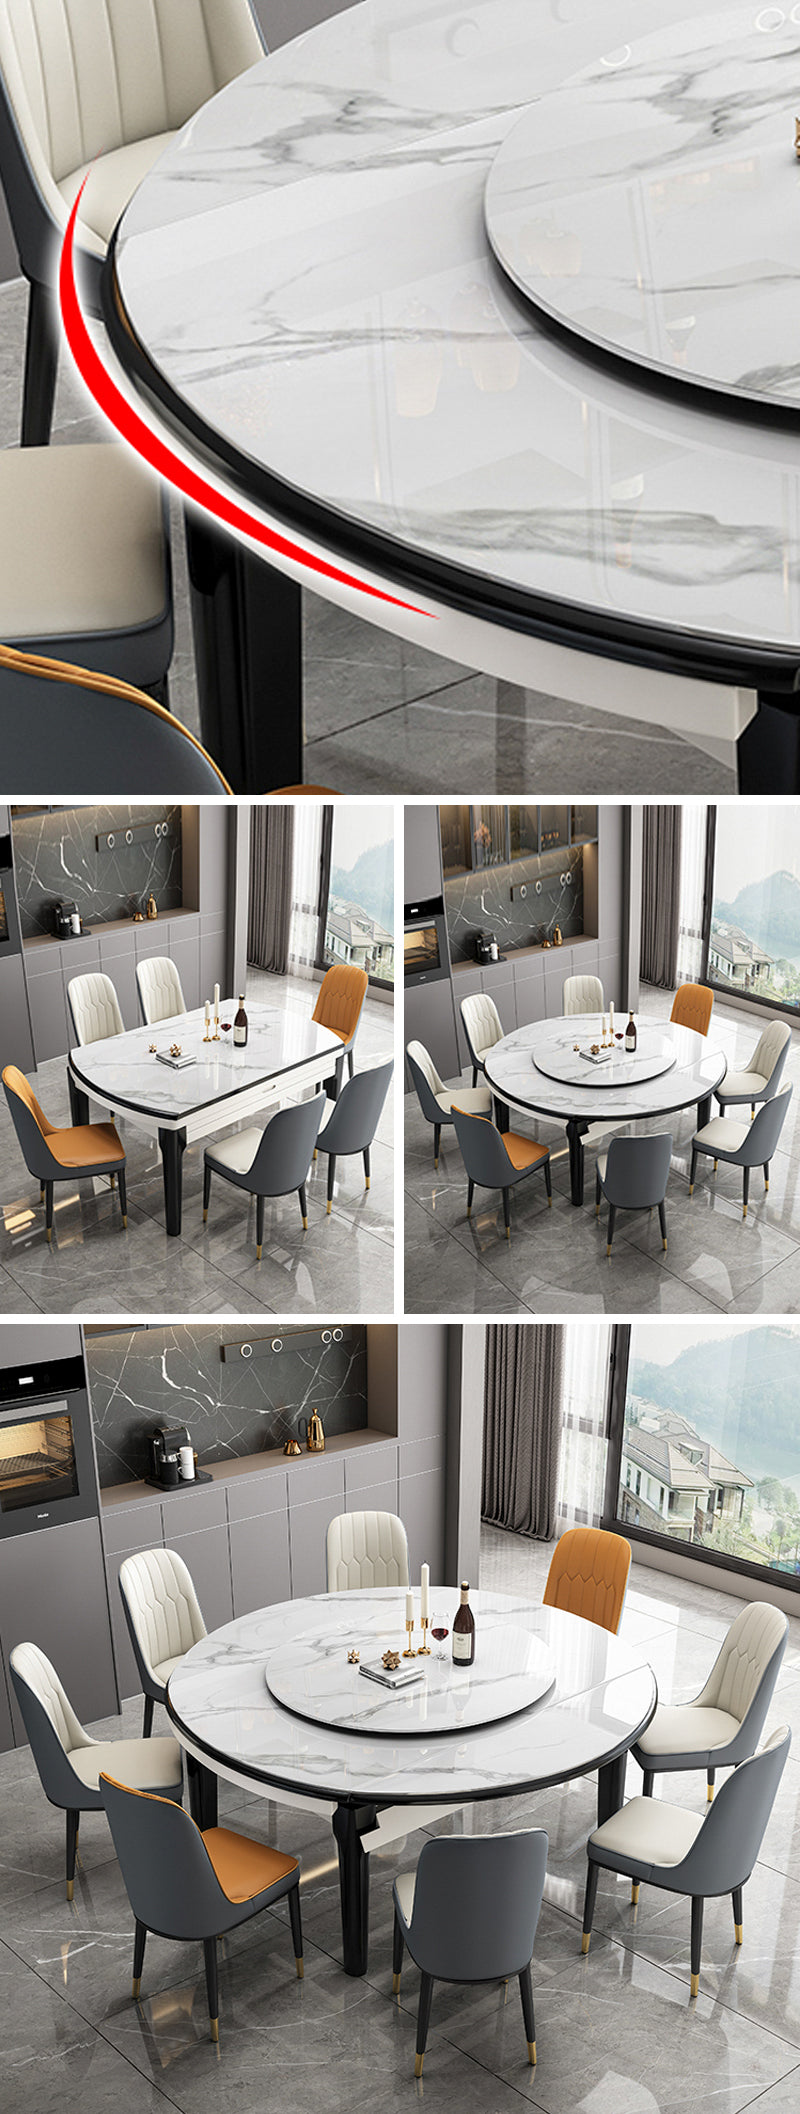 【ダイニングテーブル】 高級感 伸長式 天板厚み選べる ダイニングテーブル 椅子セット ※伸縮機能が叶え、使用シーンやお部屋のレイアウトに合わせて形を選べます。